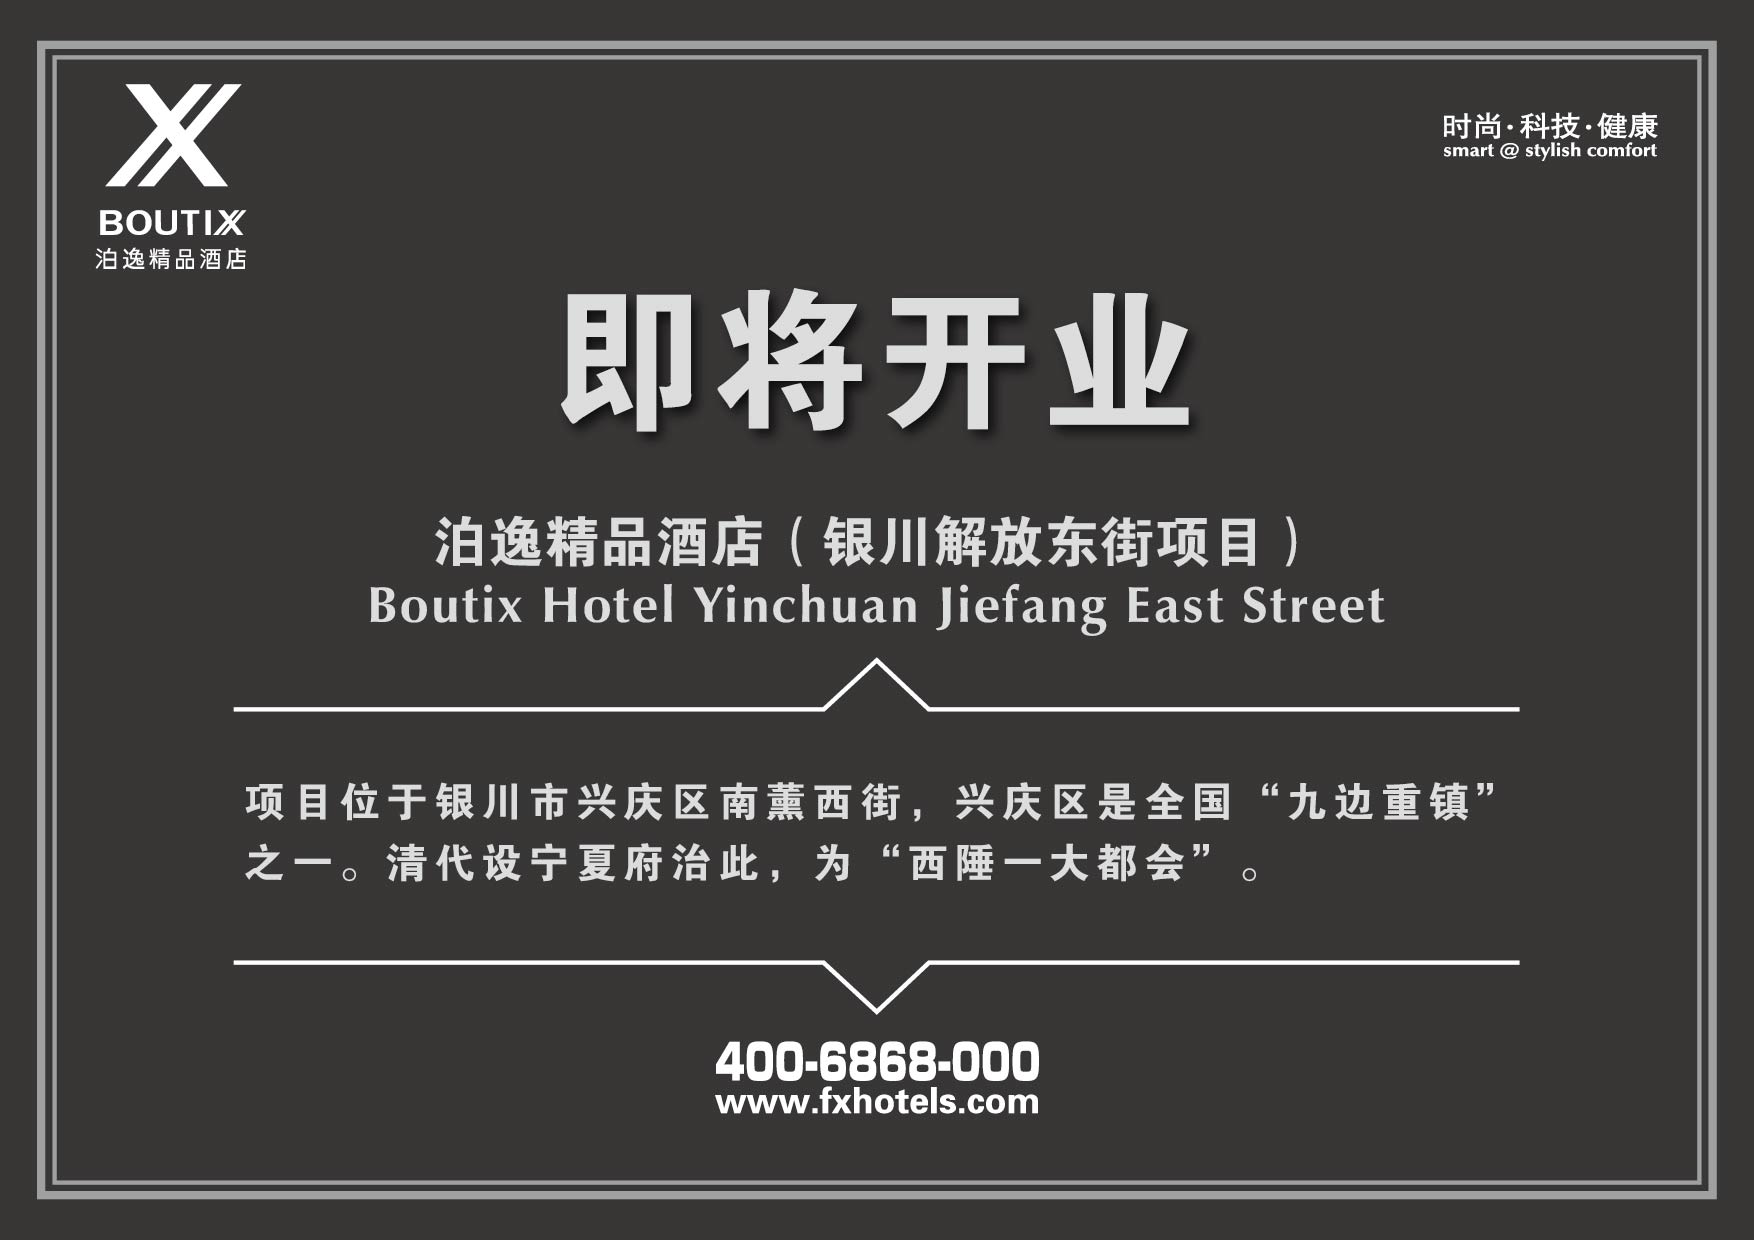 Boutix Hotel Yinchuan Jiefang East Street